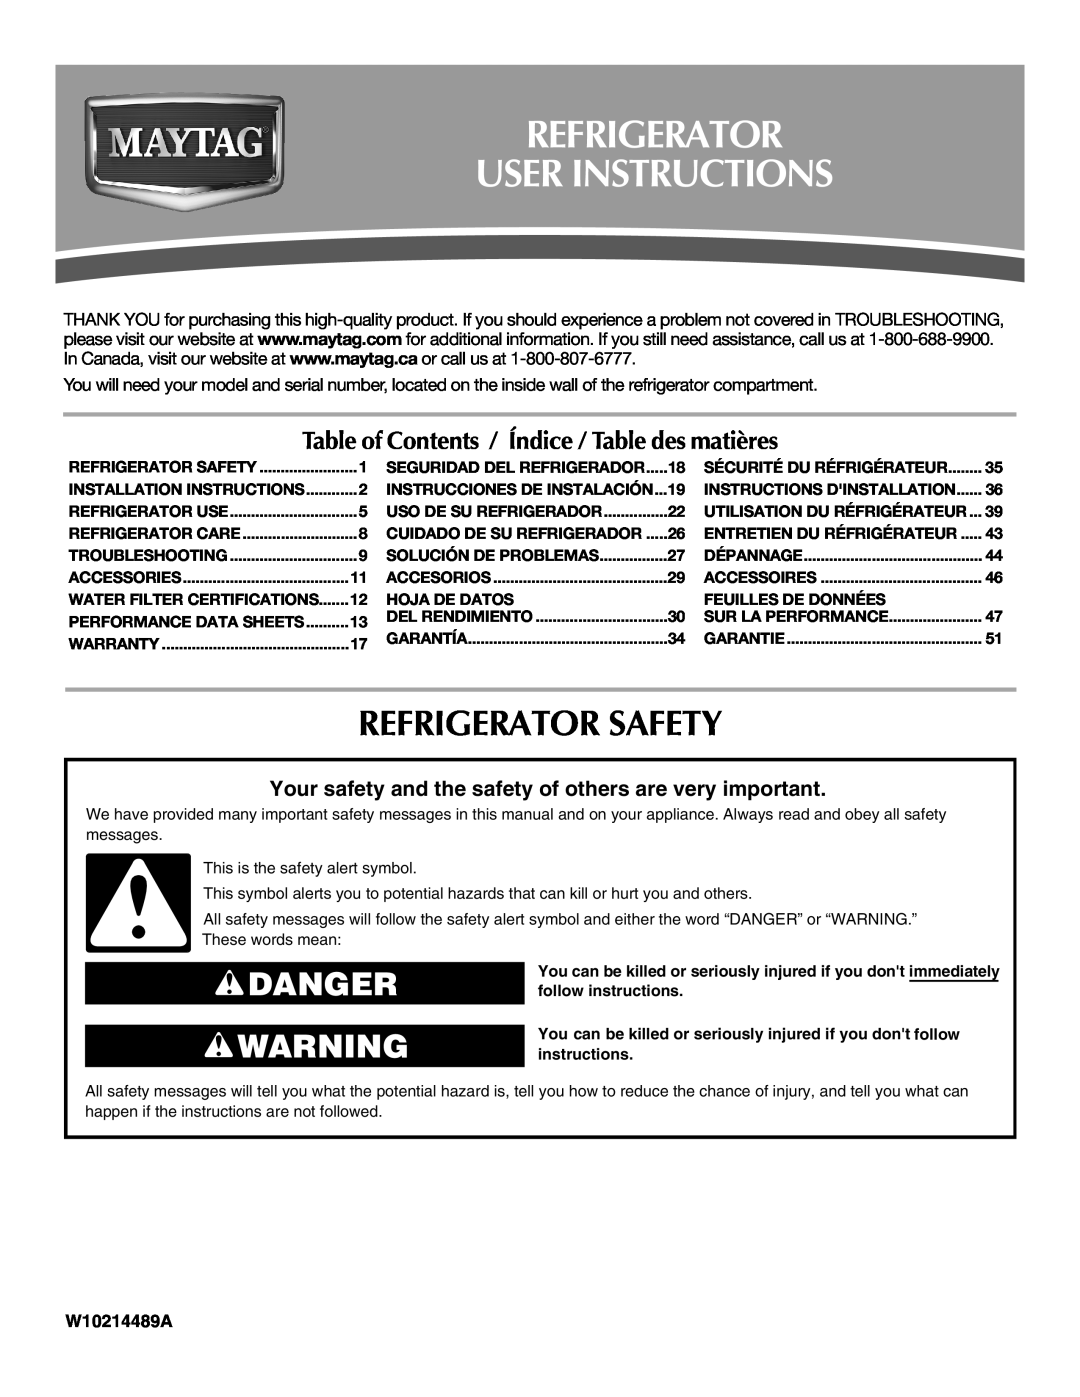 Maytag W10214489A, W10214488A installation instructions Refrigerator User Instructions, Refrigerator Safety, Danger 